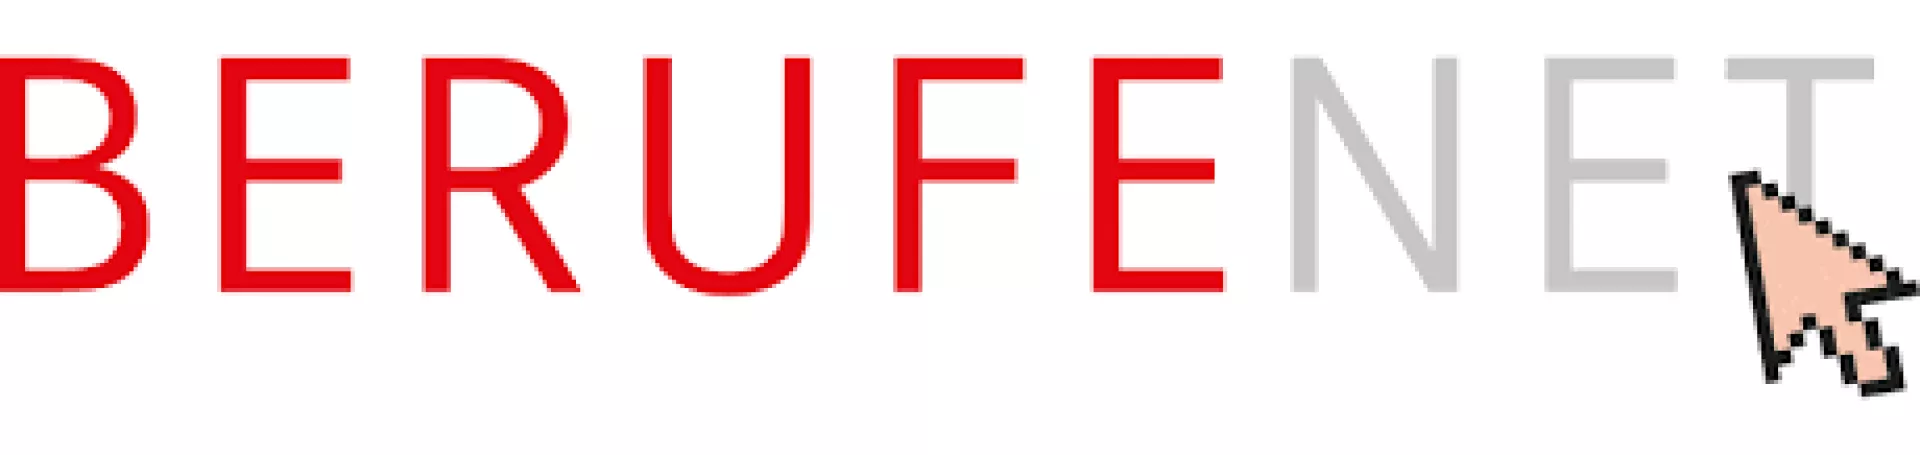 Logo BERUFENET